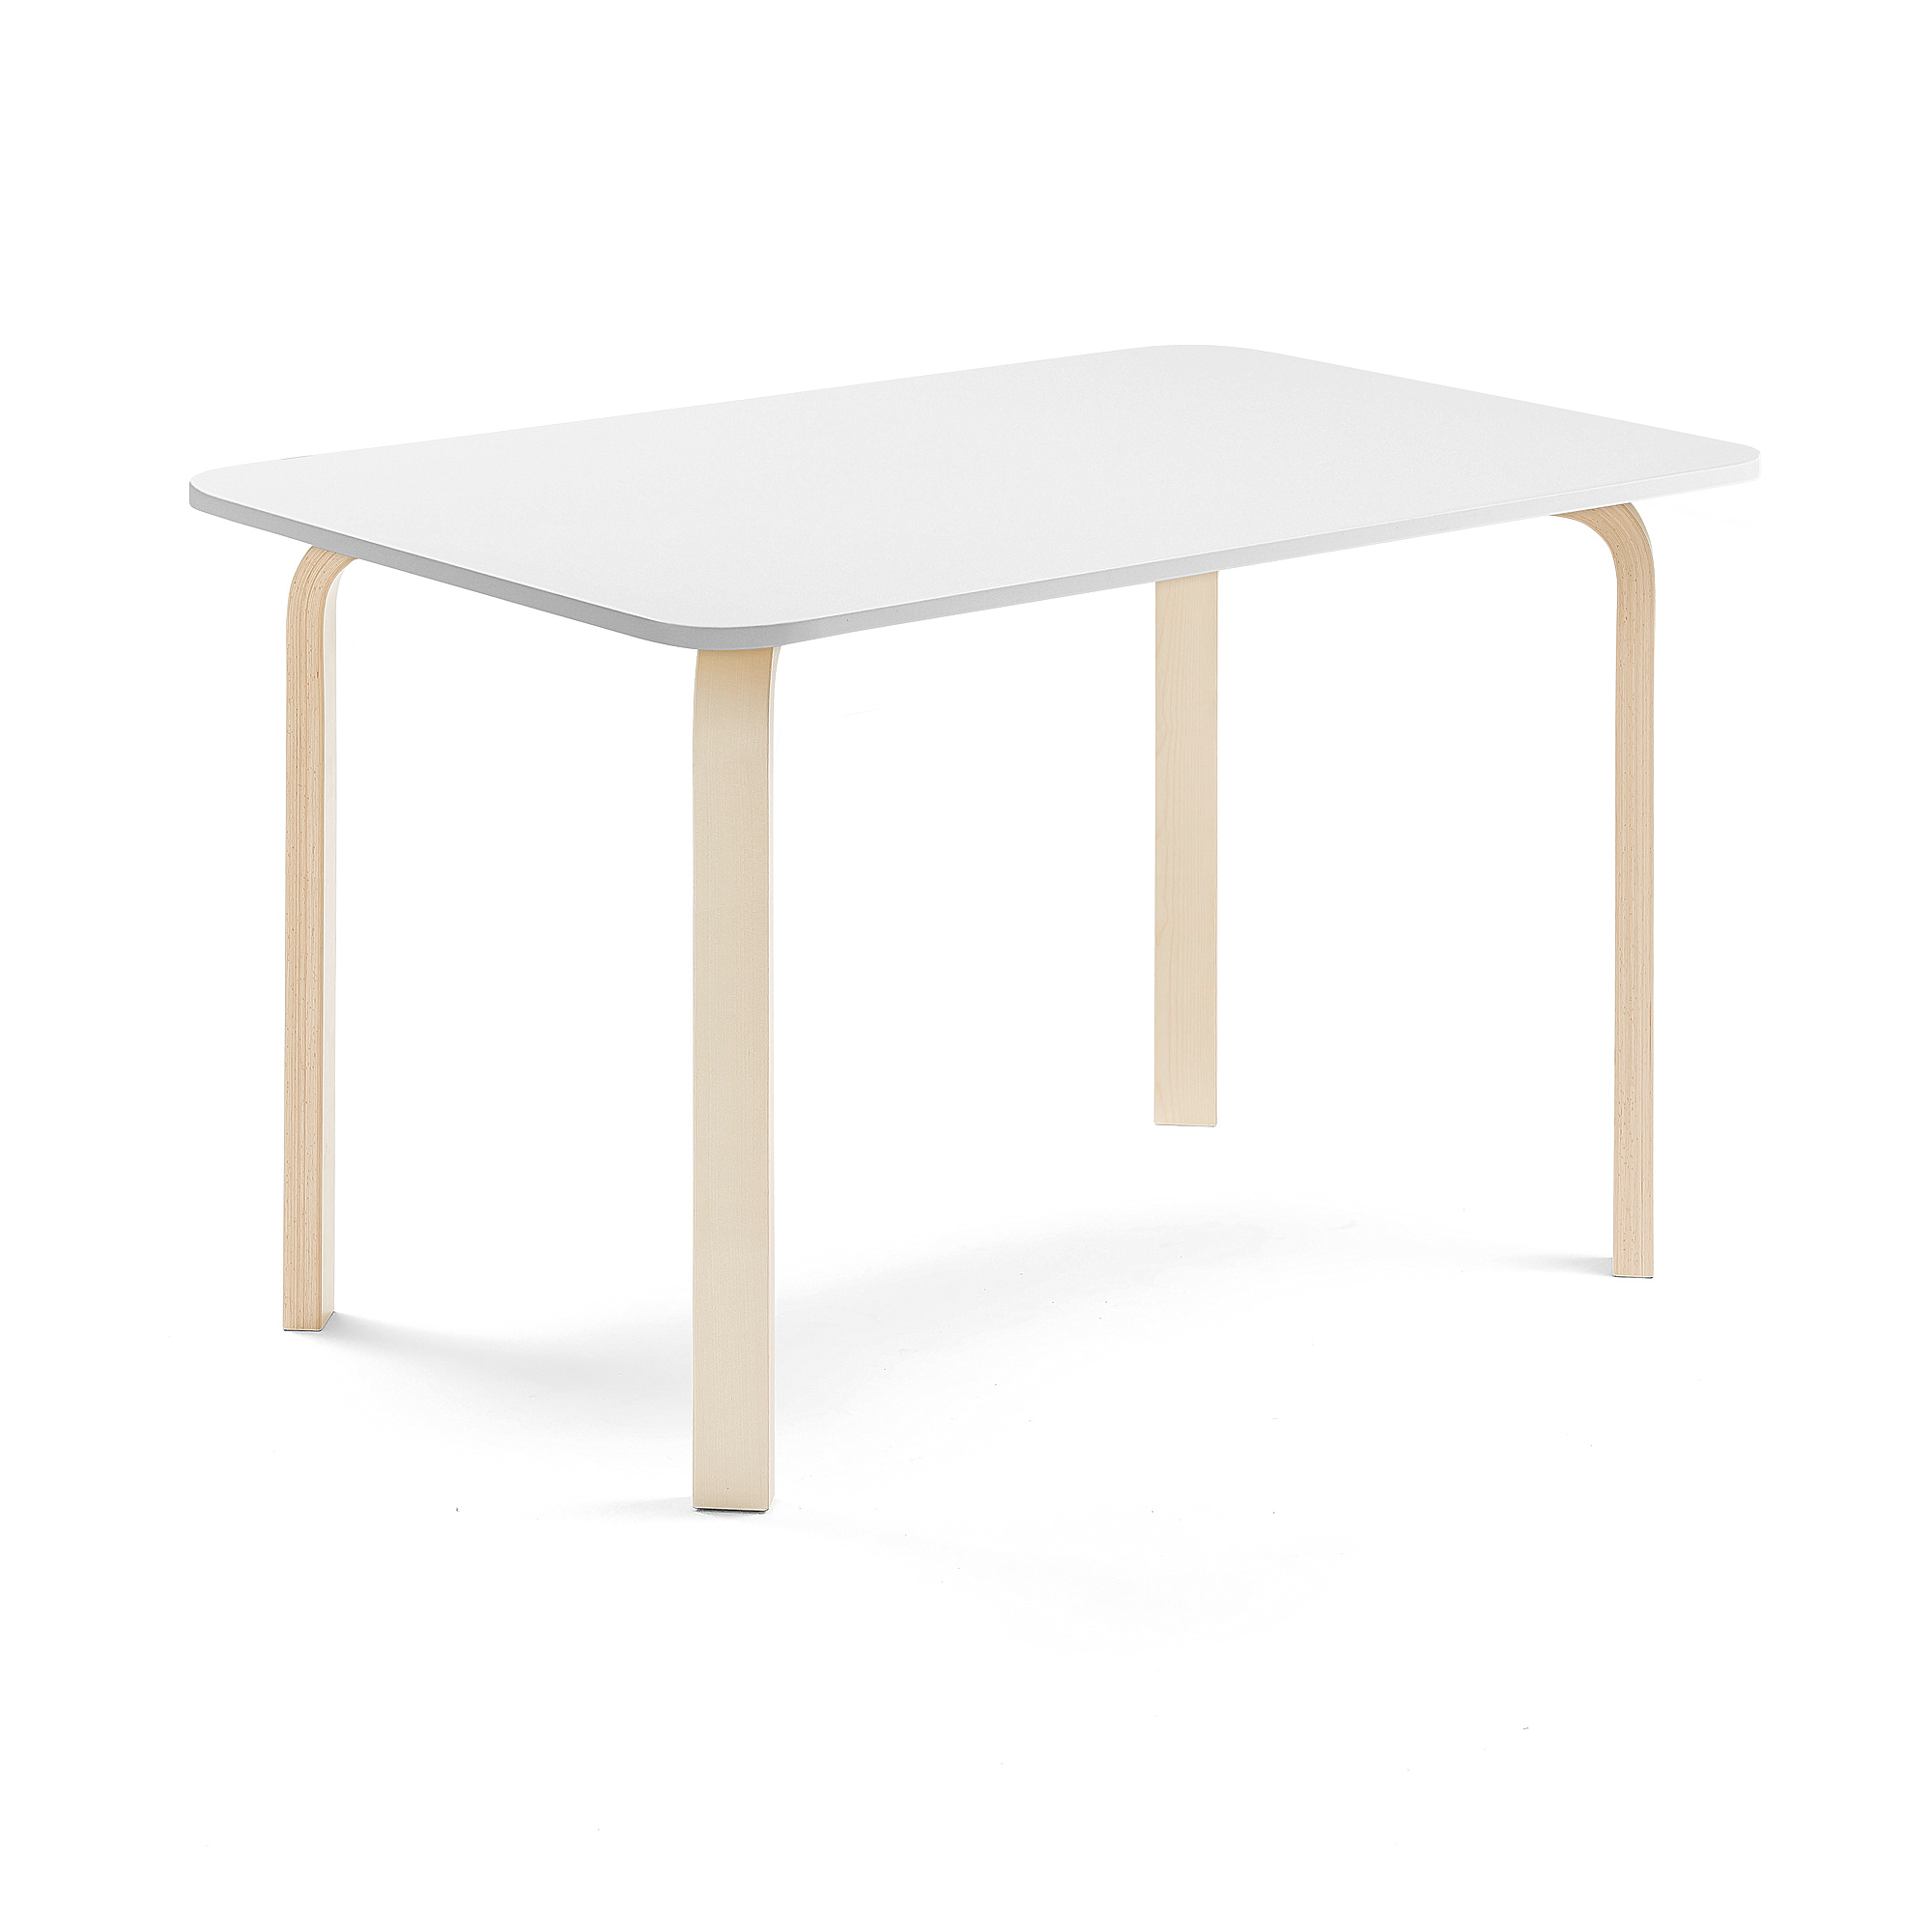 Stůl ELTON, 1200x800x710 mm, bříza, akustická HPL deska, bílá